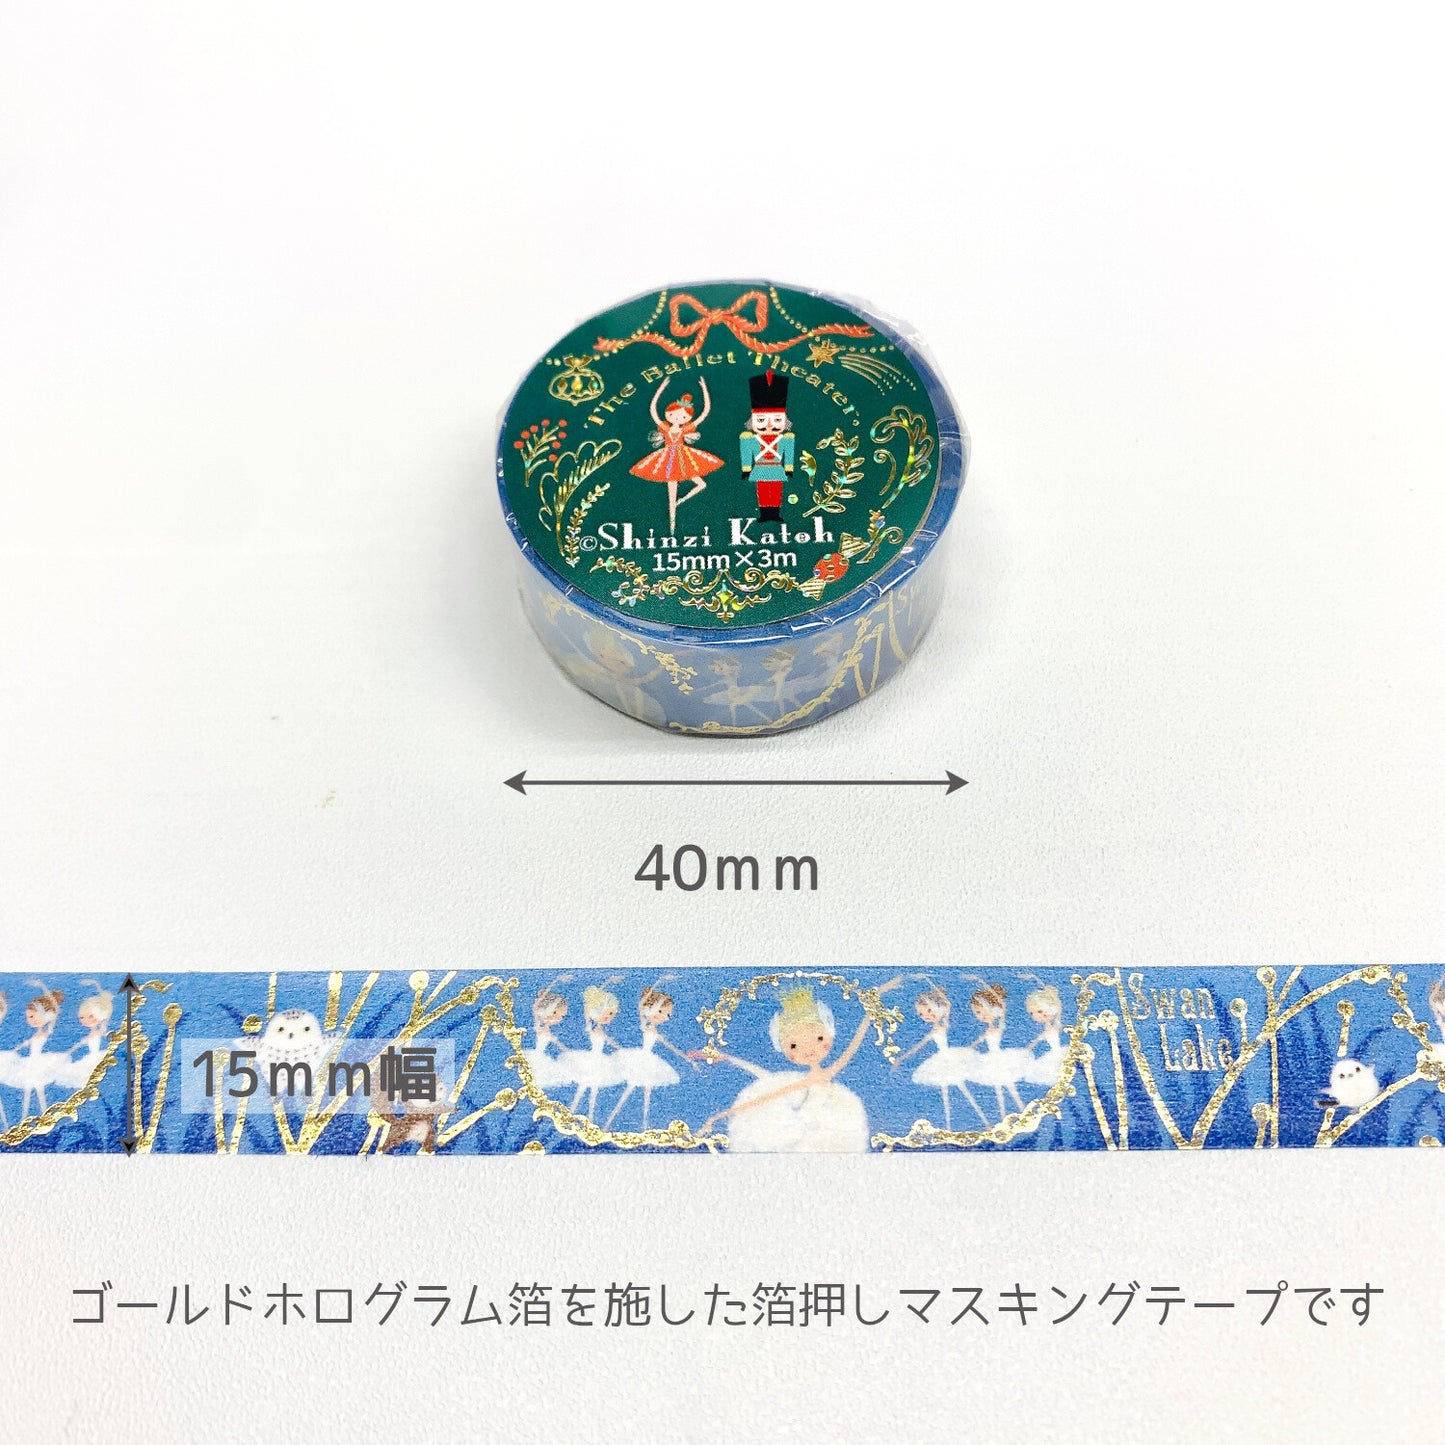 Swan Lake Ballet Glitter Japanese Washi Tape Masking Tape Shinzi Katoh Design